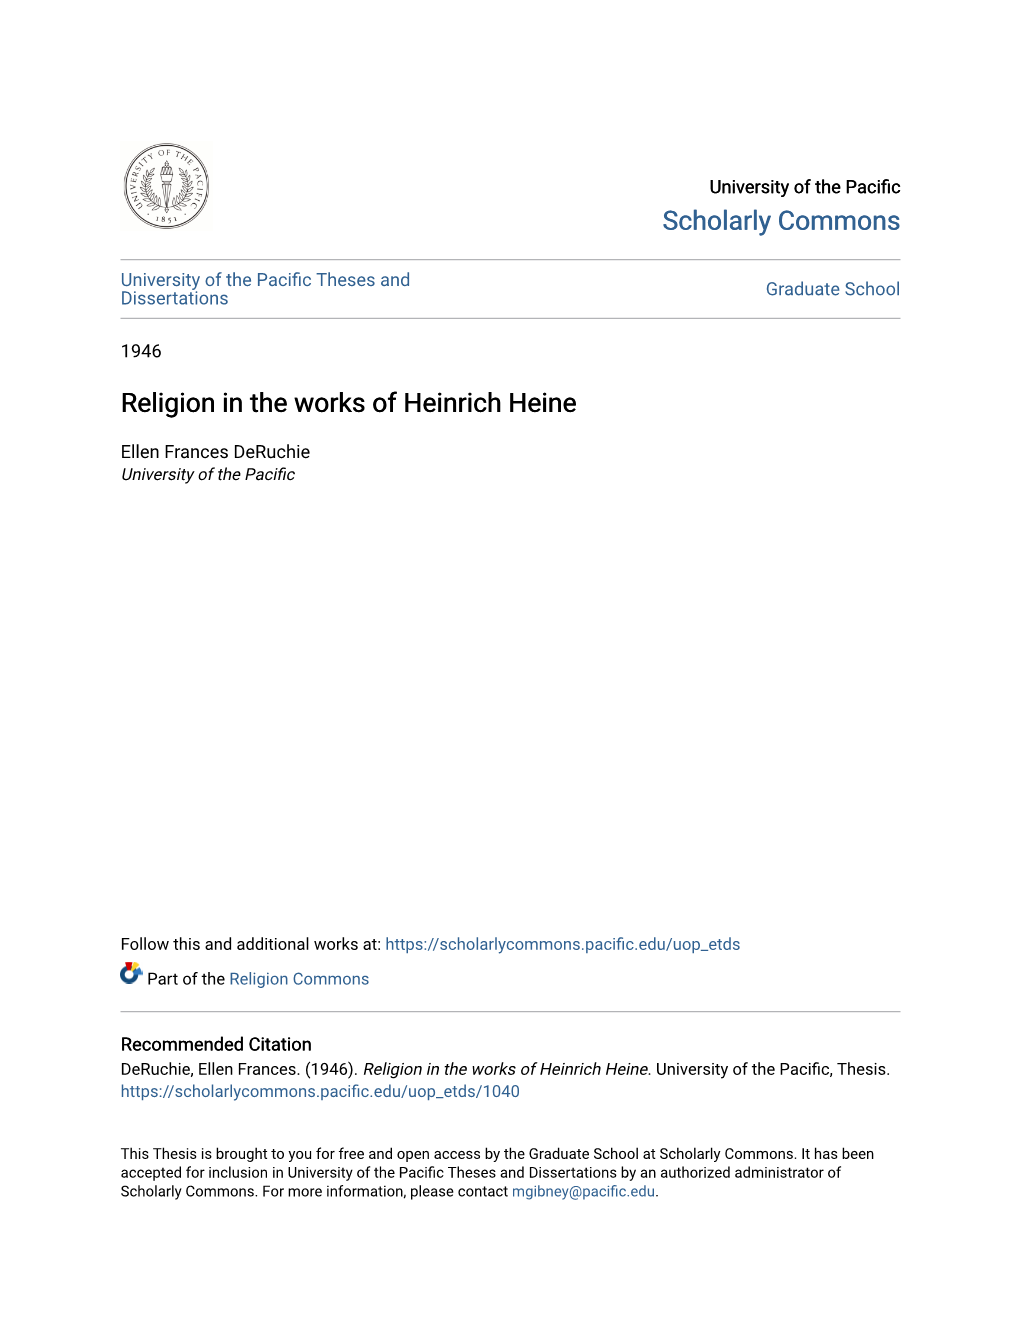 Religion in the Works of Heinrich Heine